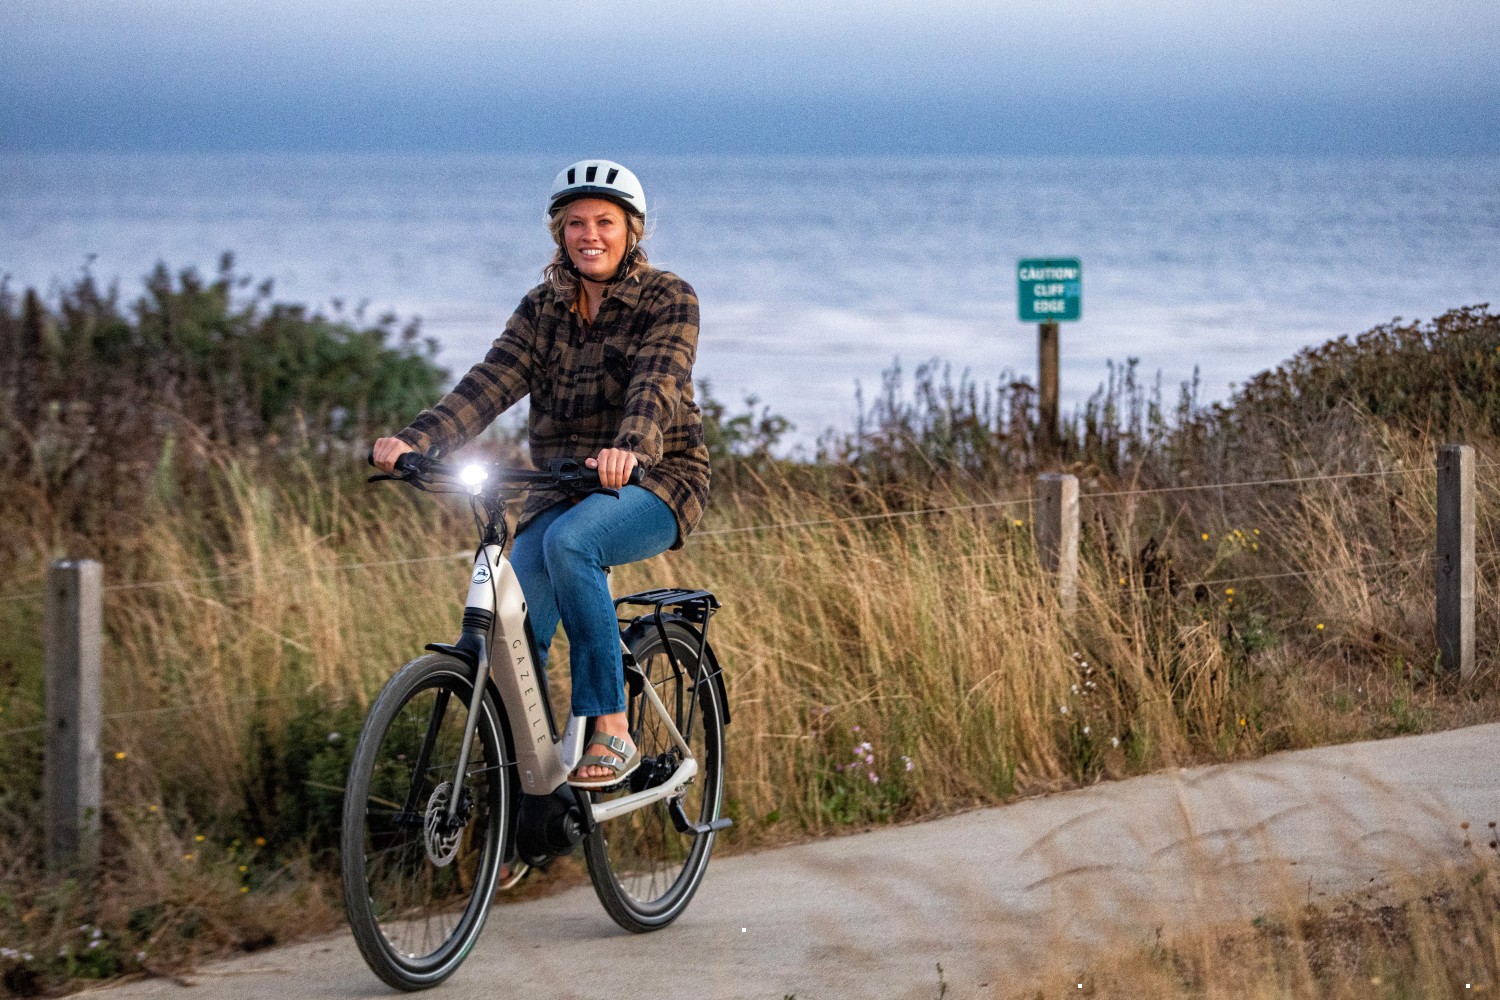 Woman riding Dutch bike by the sea